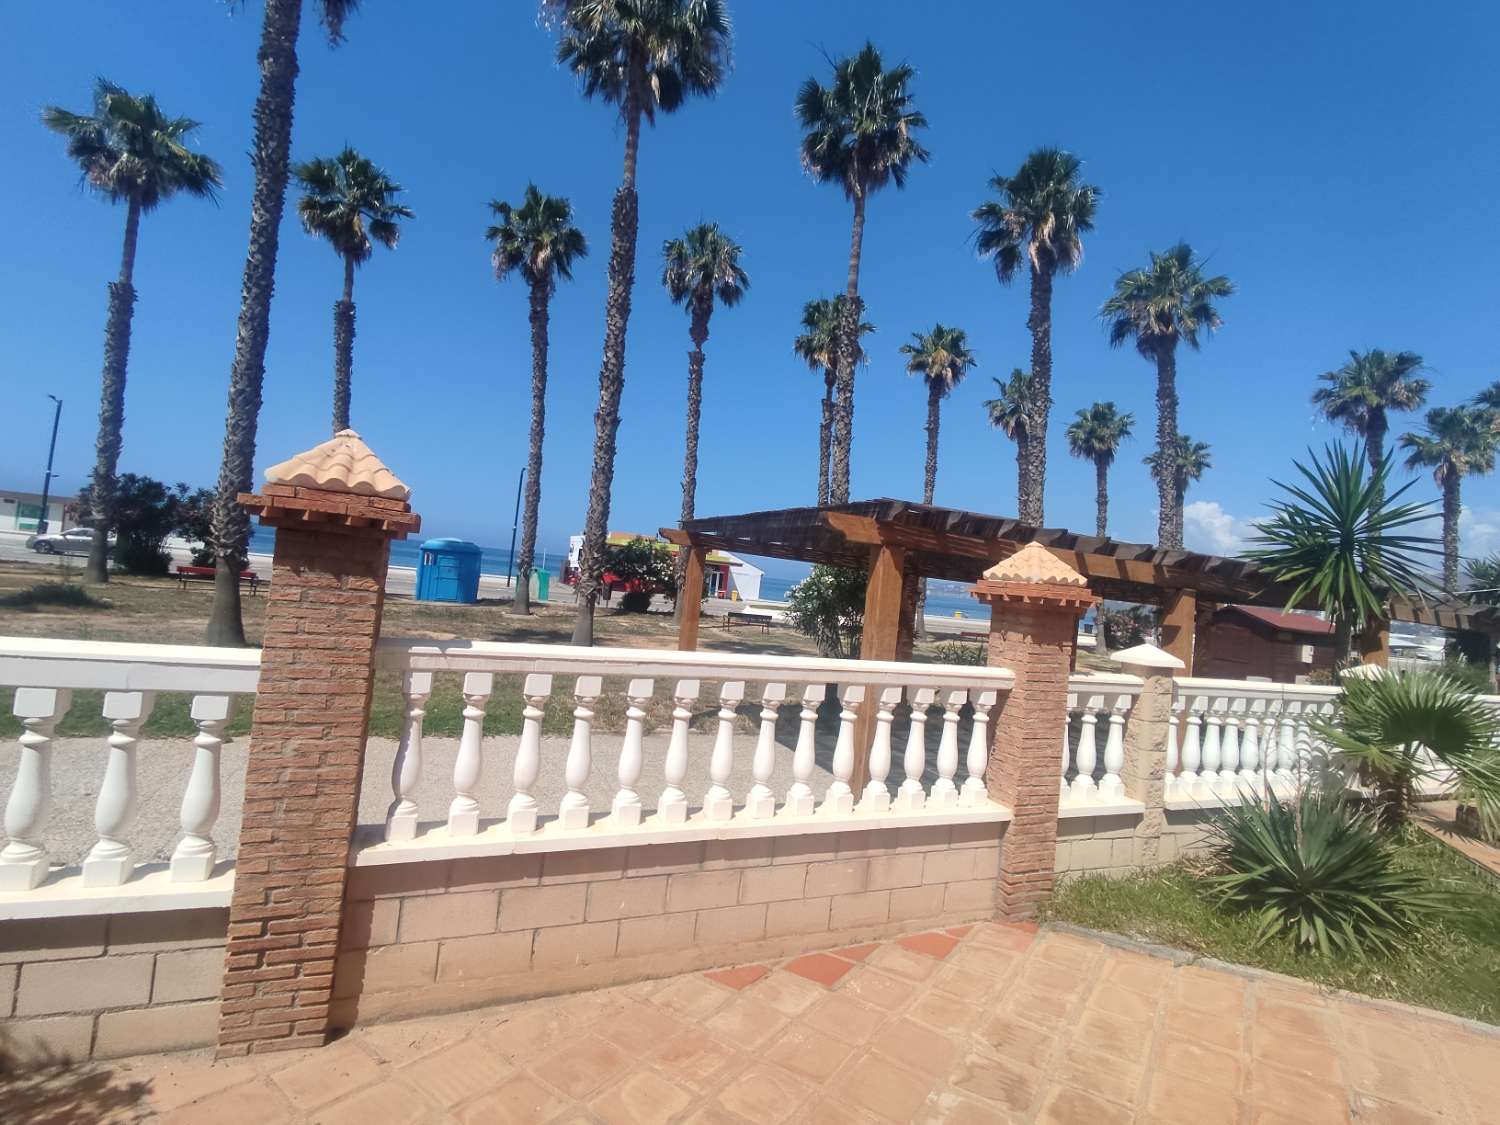 Magnifico Local Comercial en Primera línea de Playa destinado a hostelería